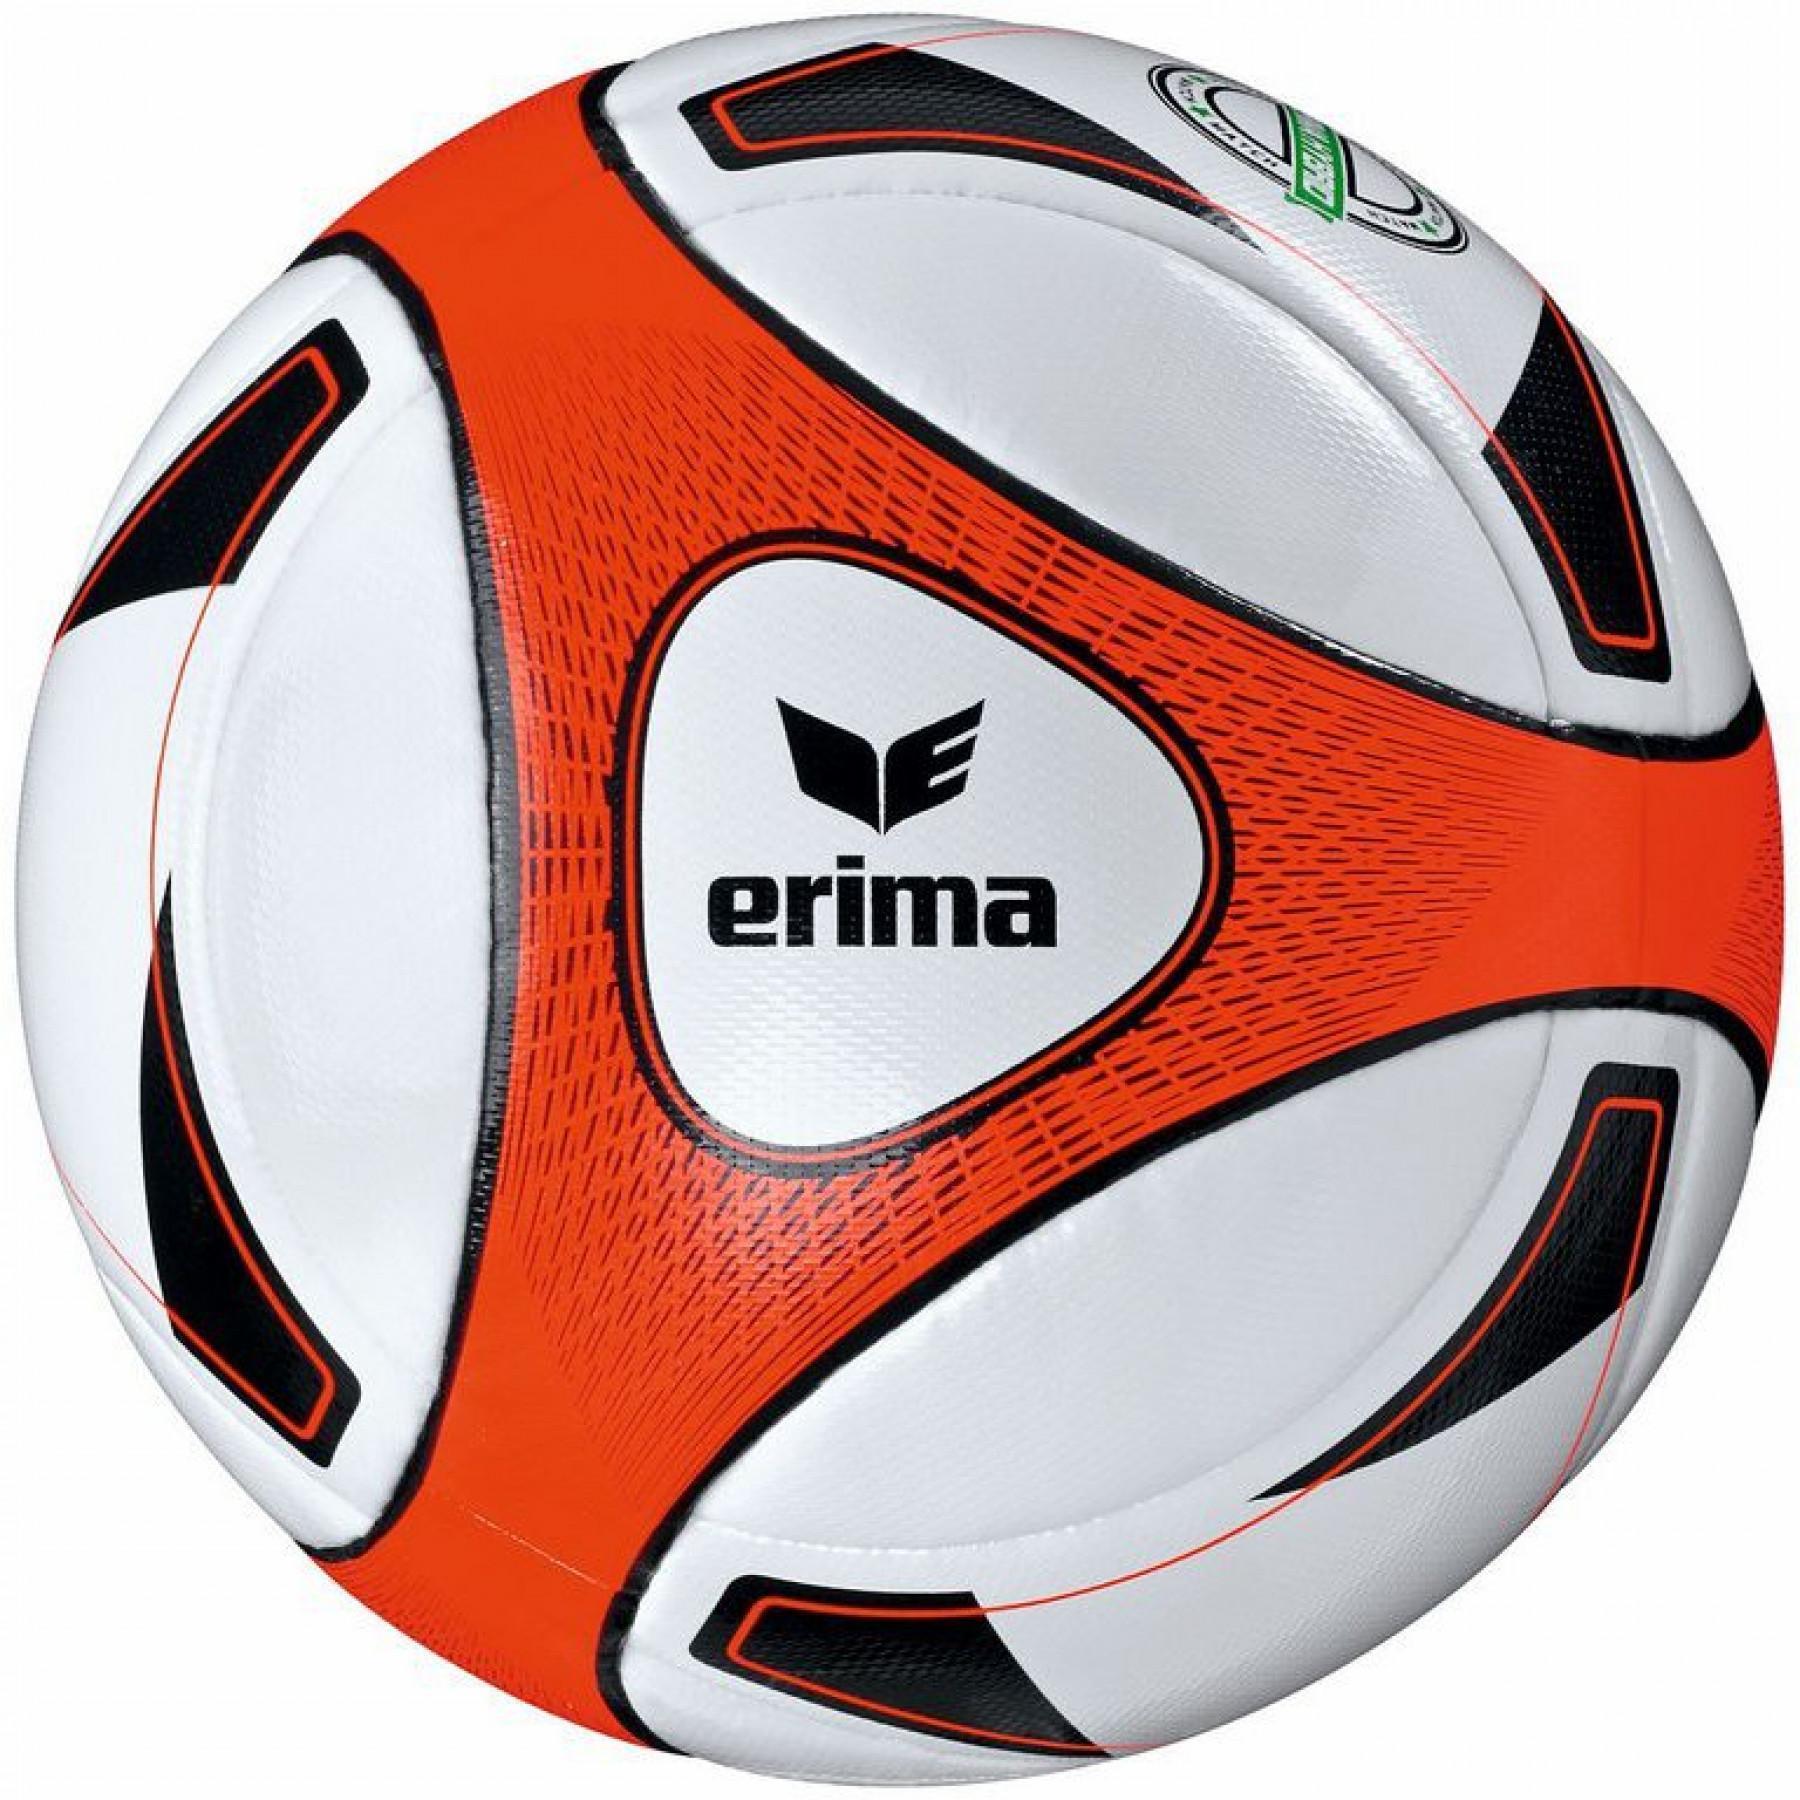 Piłka nożna Erima Hybrid Match